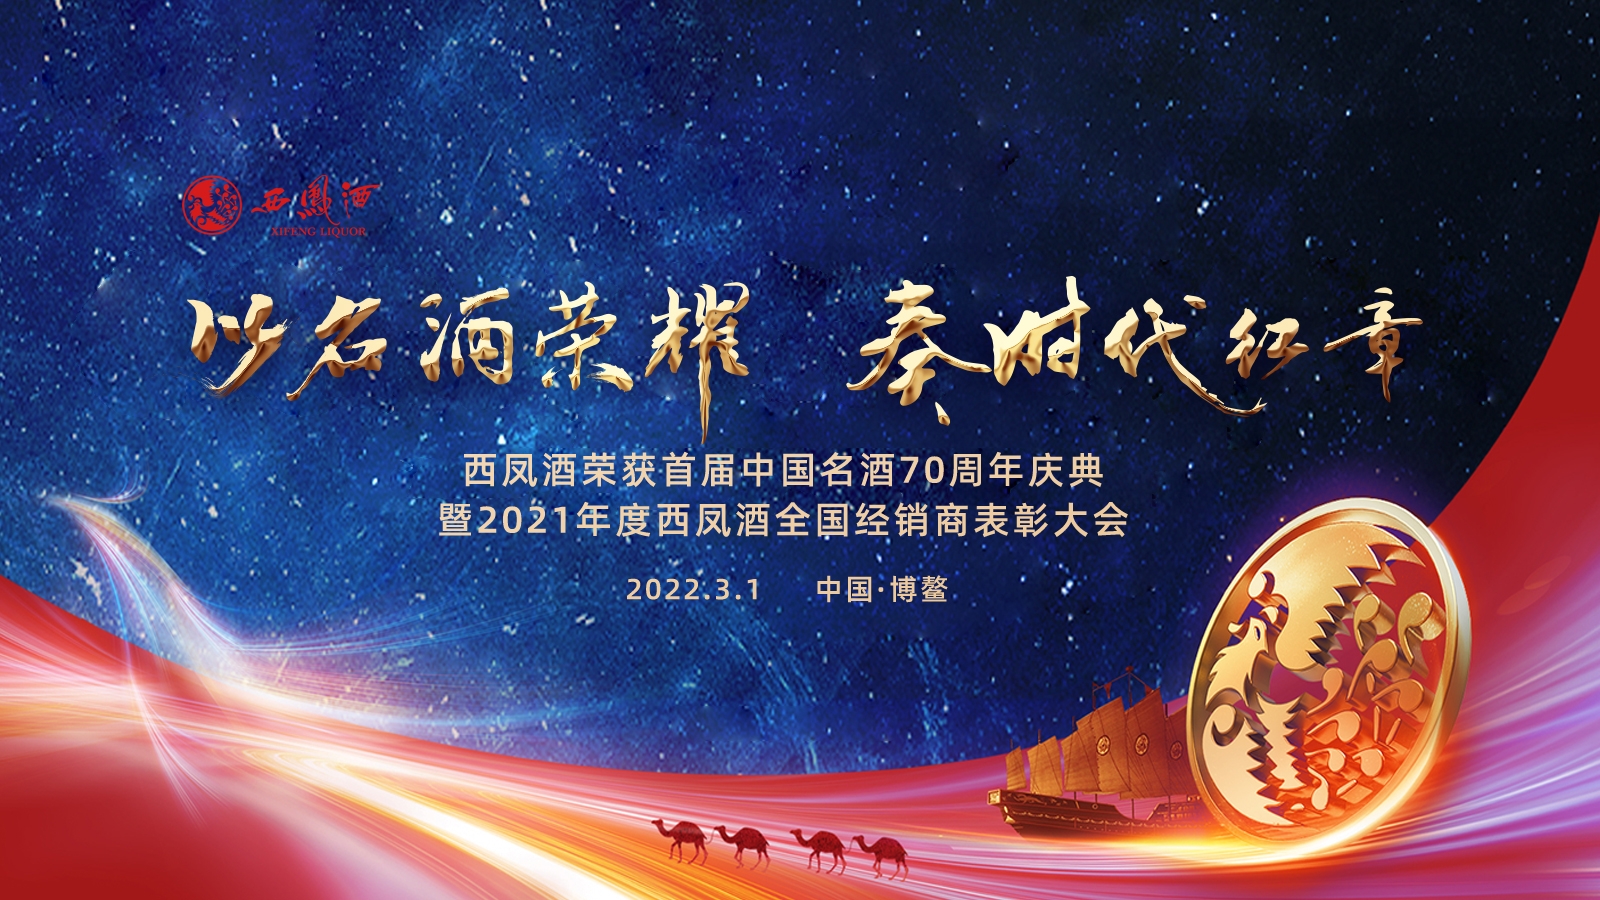 西鳳酒榮獲首屆中國名酒70周年慶典暨2021年度全國經銷商表彰大會